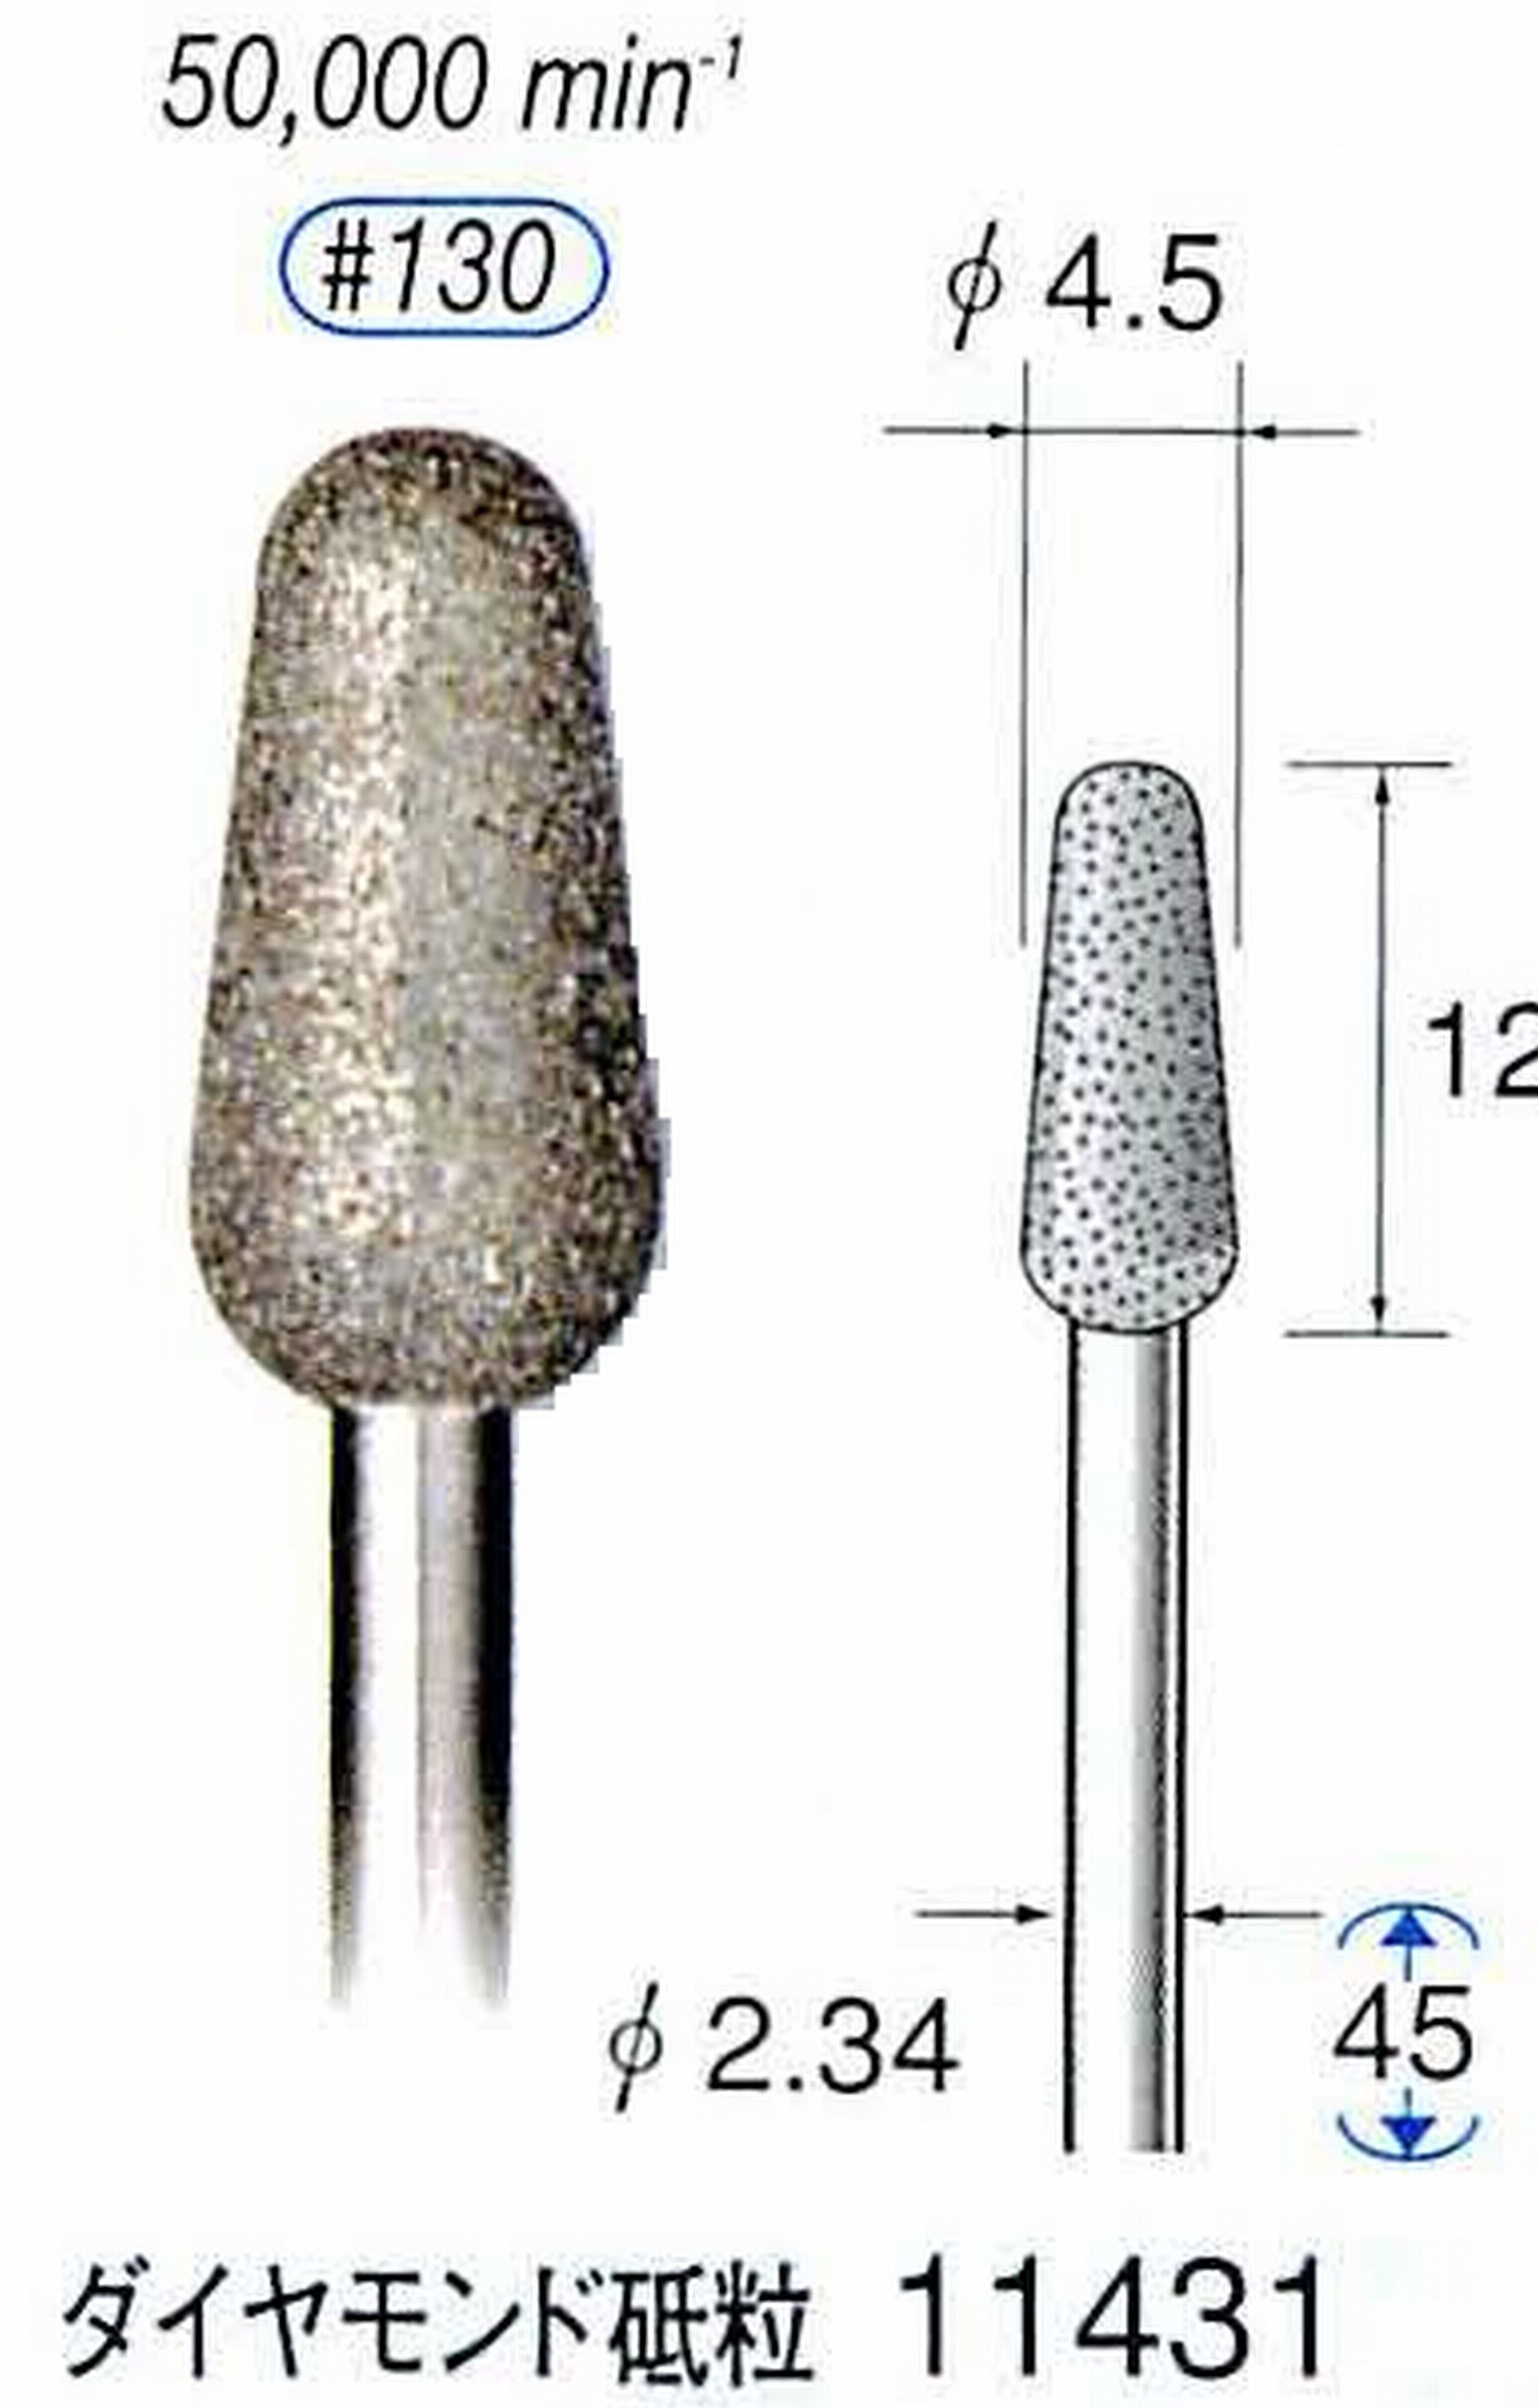 ナカニシ/NAKANISHI 電着ダイヤモンドバー ダイヤモンド砥粒 軸径(シャンク)φ2.34mm 11431